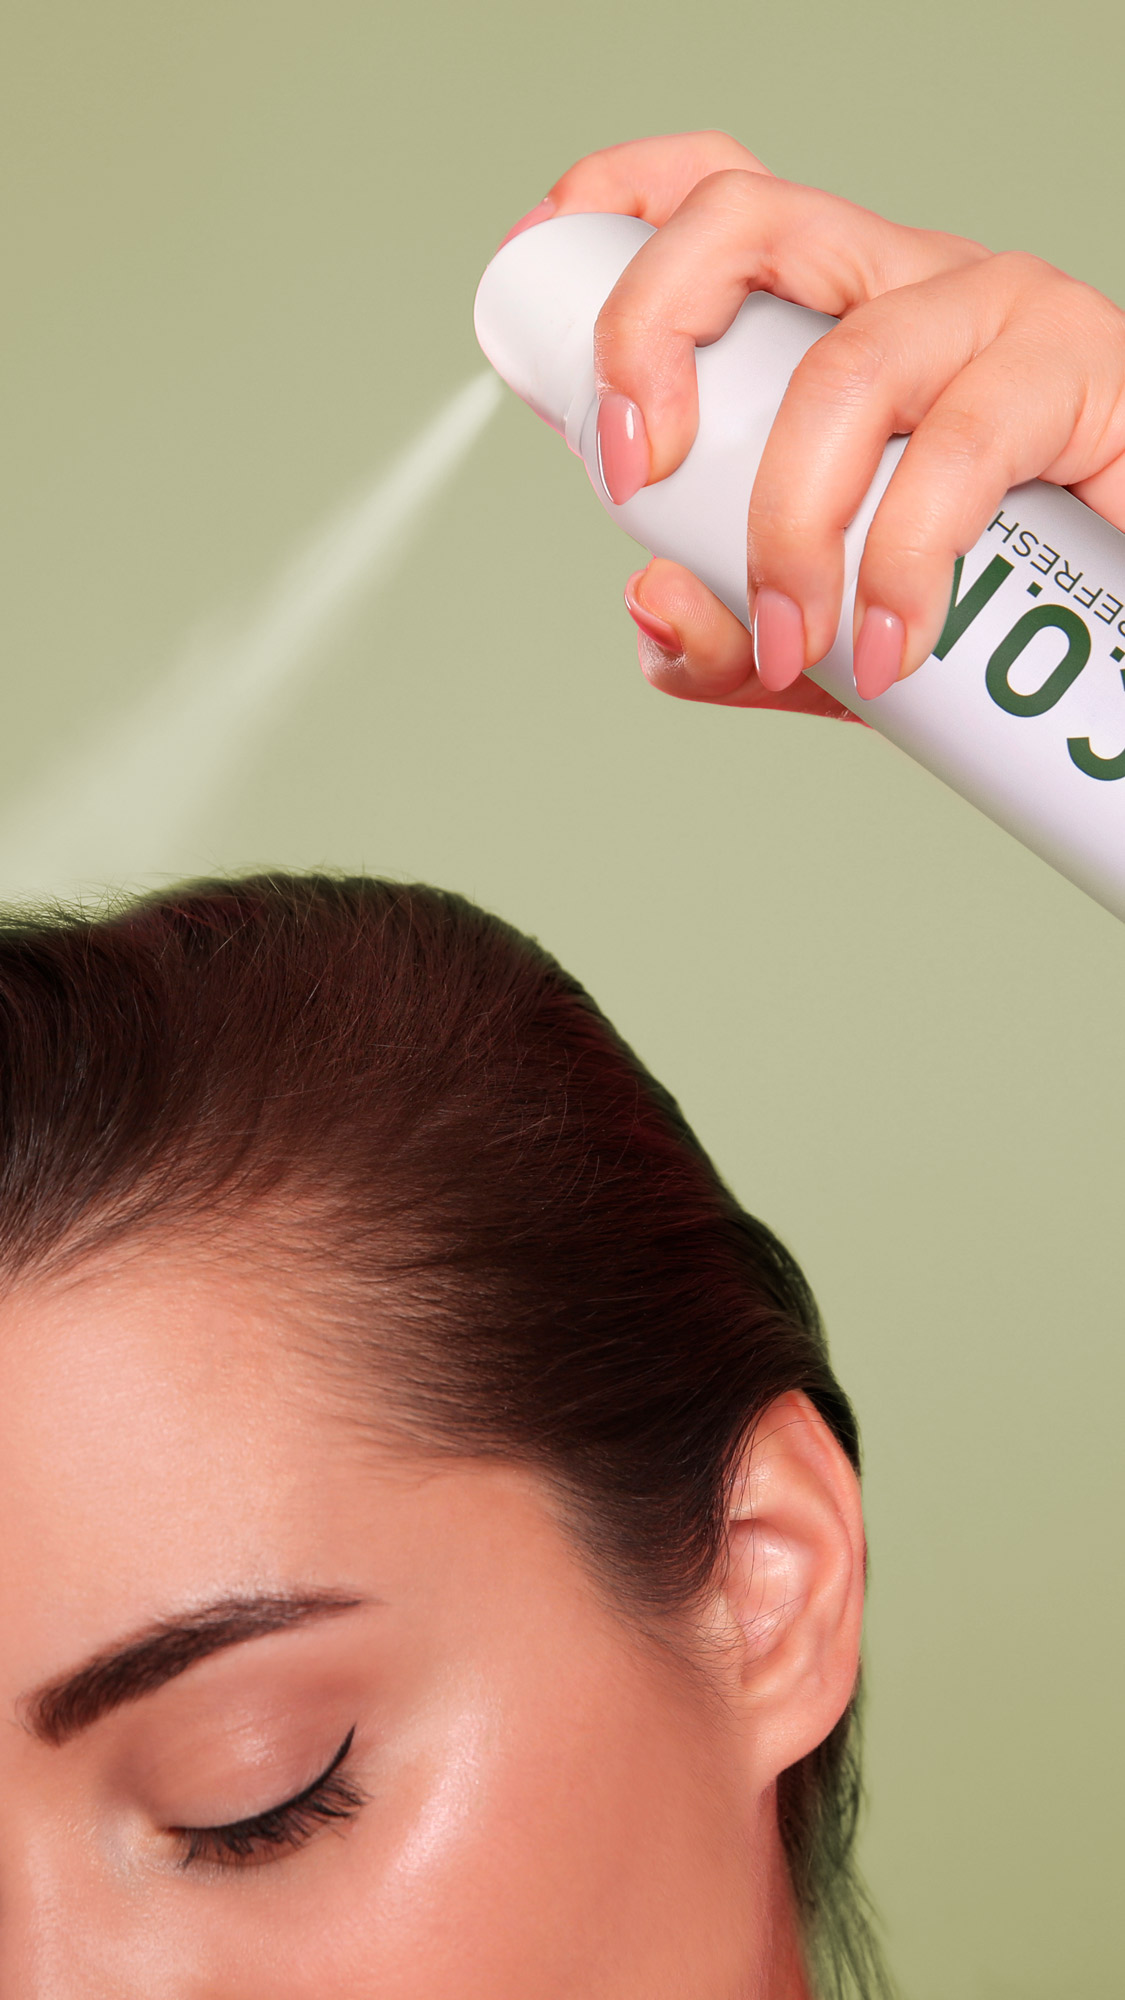 Champú seco ICON Dry para mantener el cabello limpio más tiempo